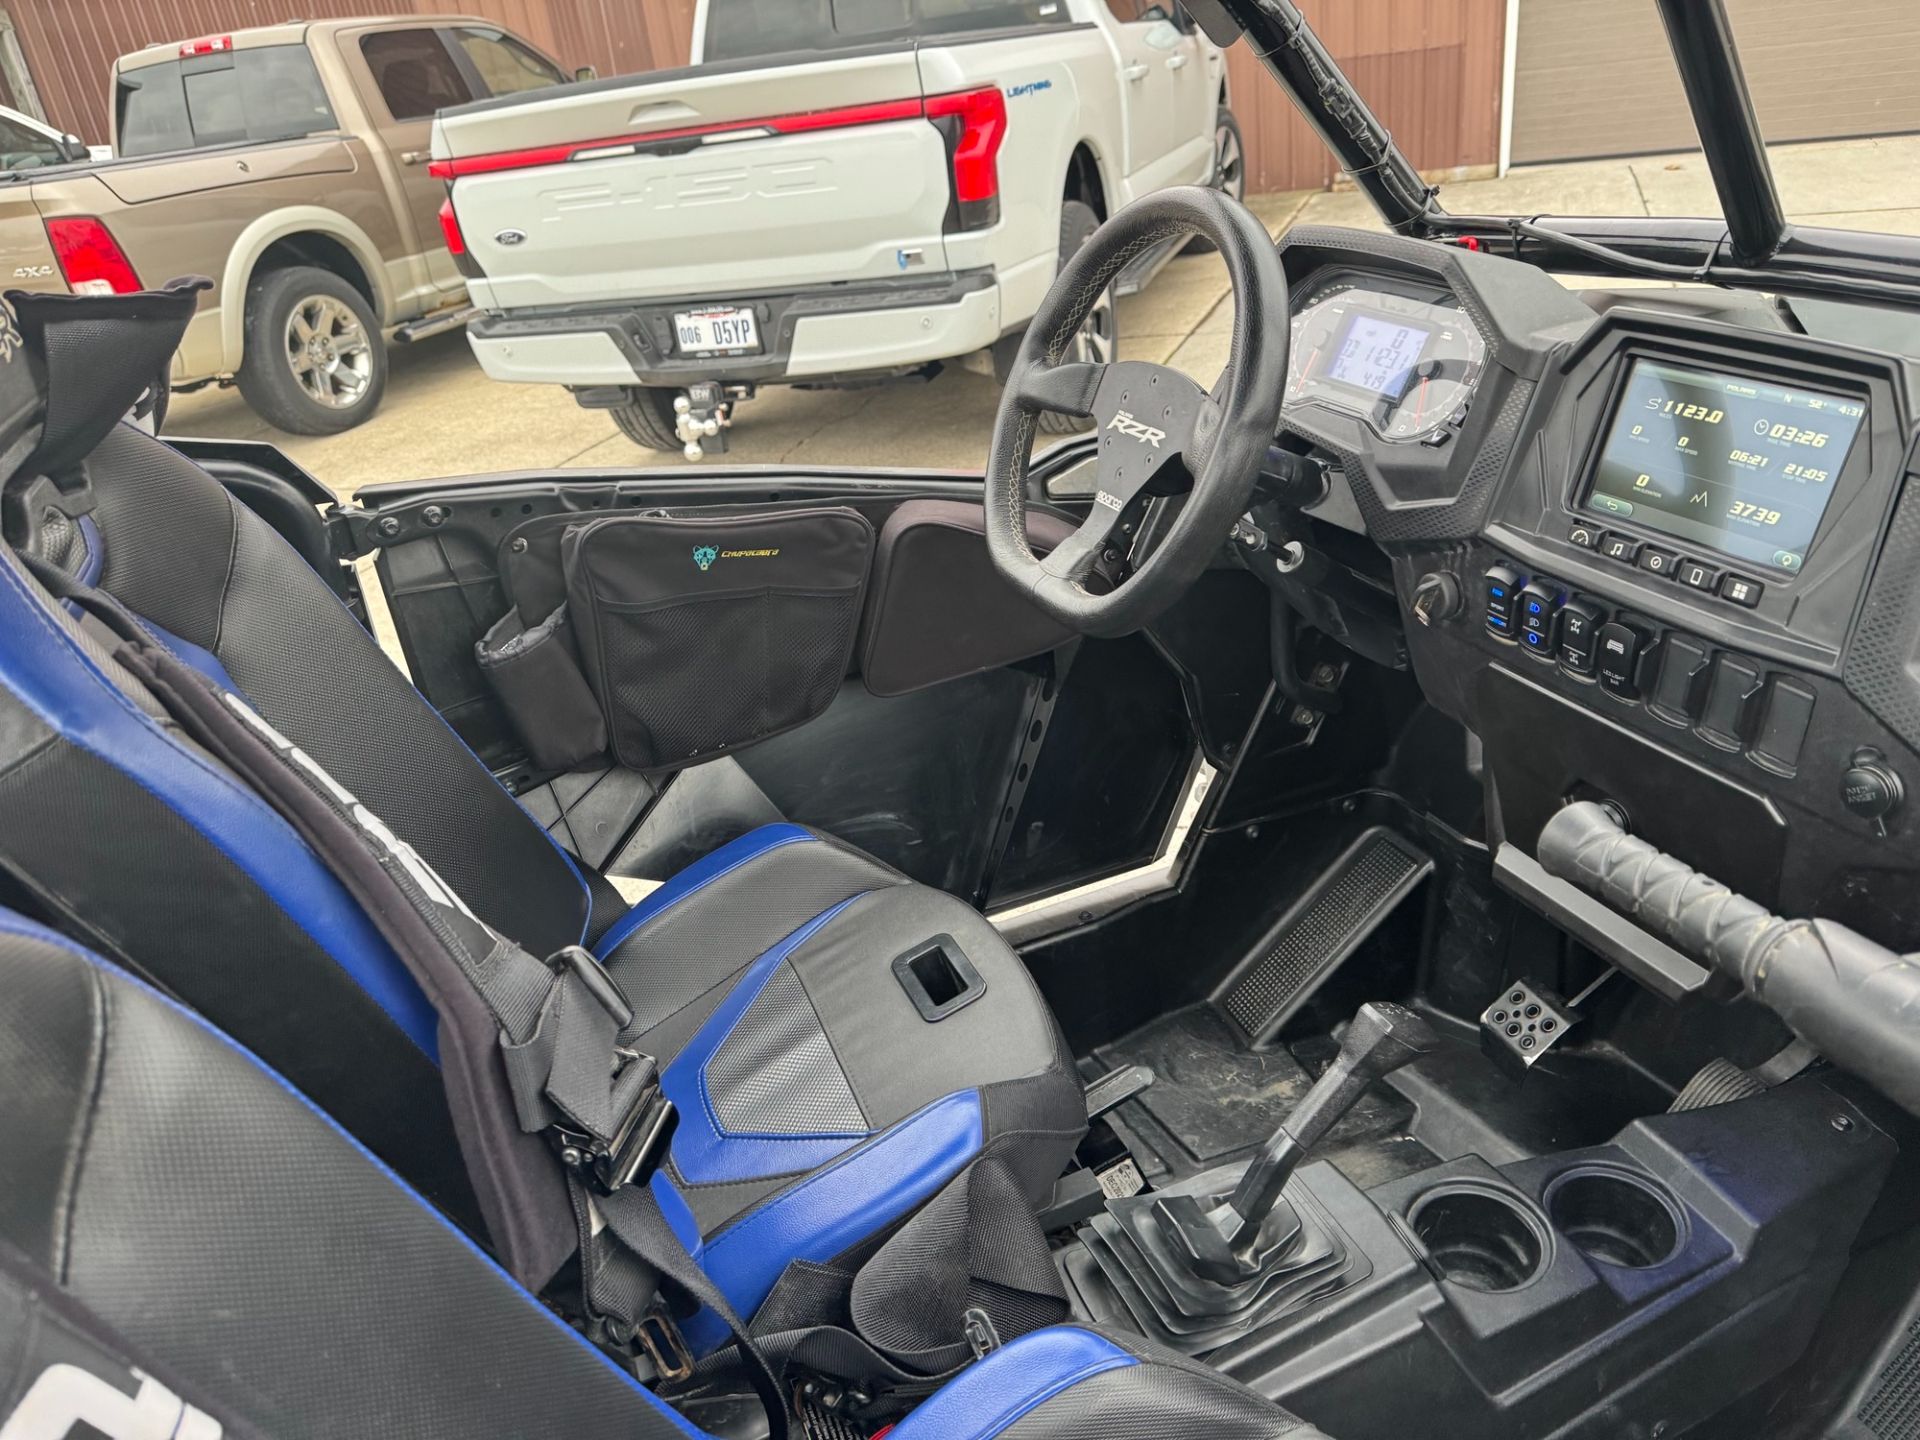 2018 Polaris RZR XP Turbo S in Huron, Ohio - Photo 7